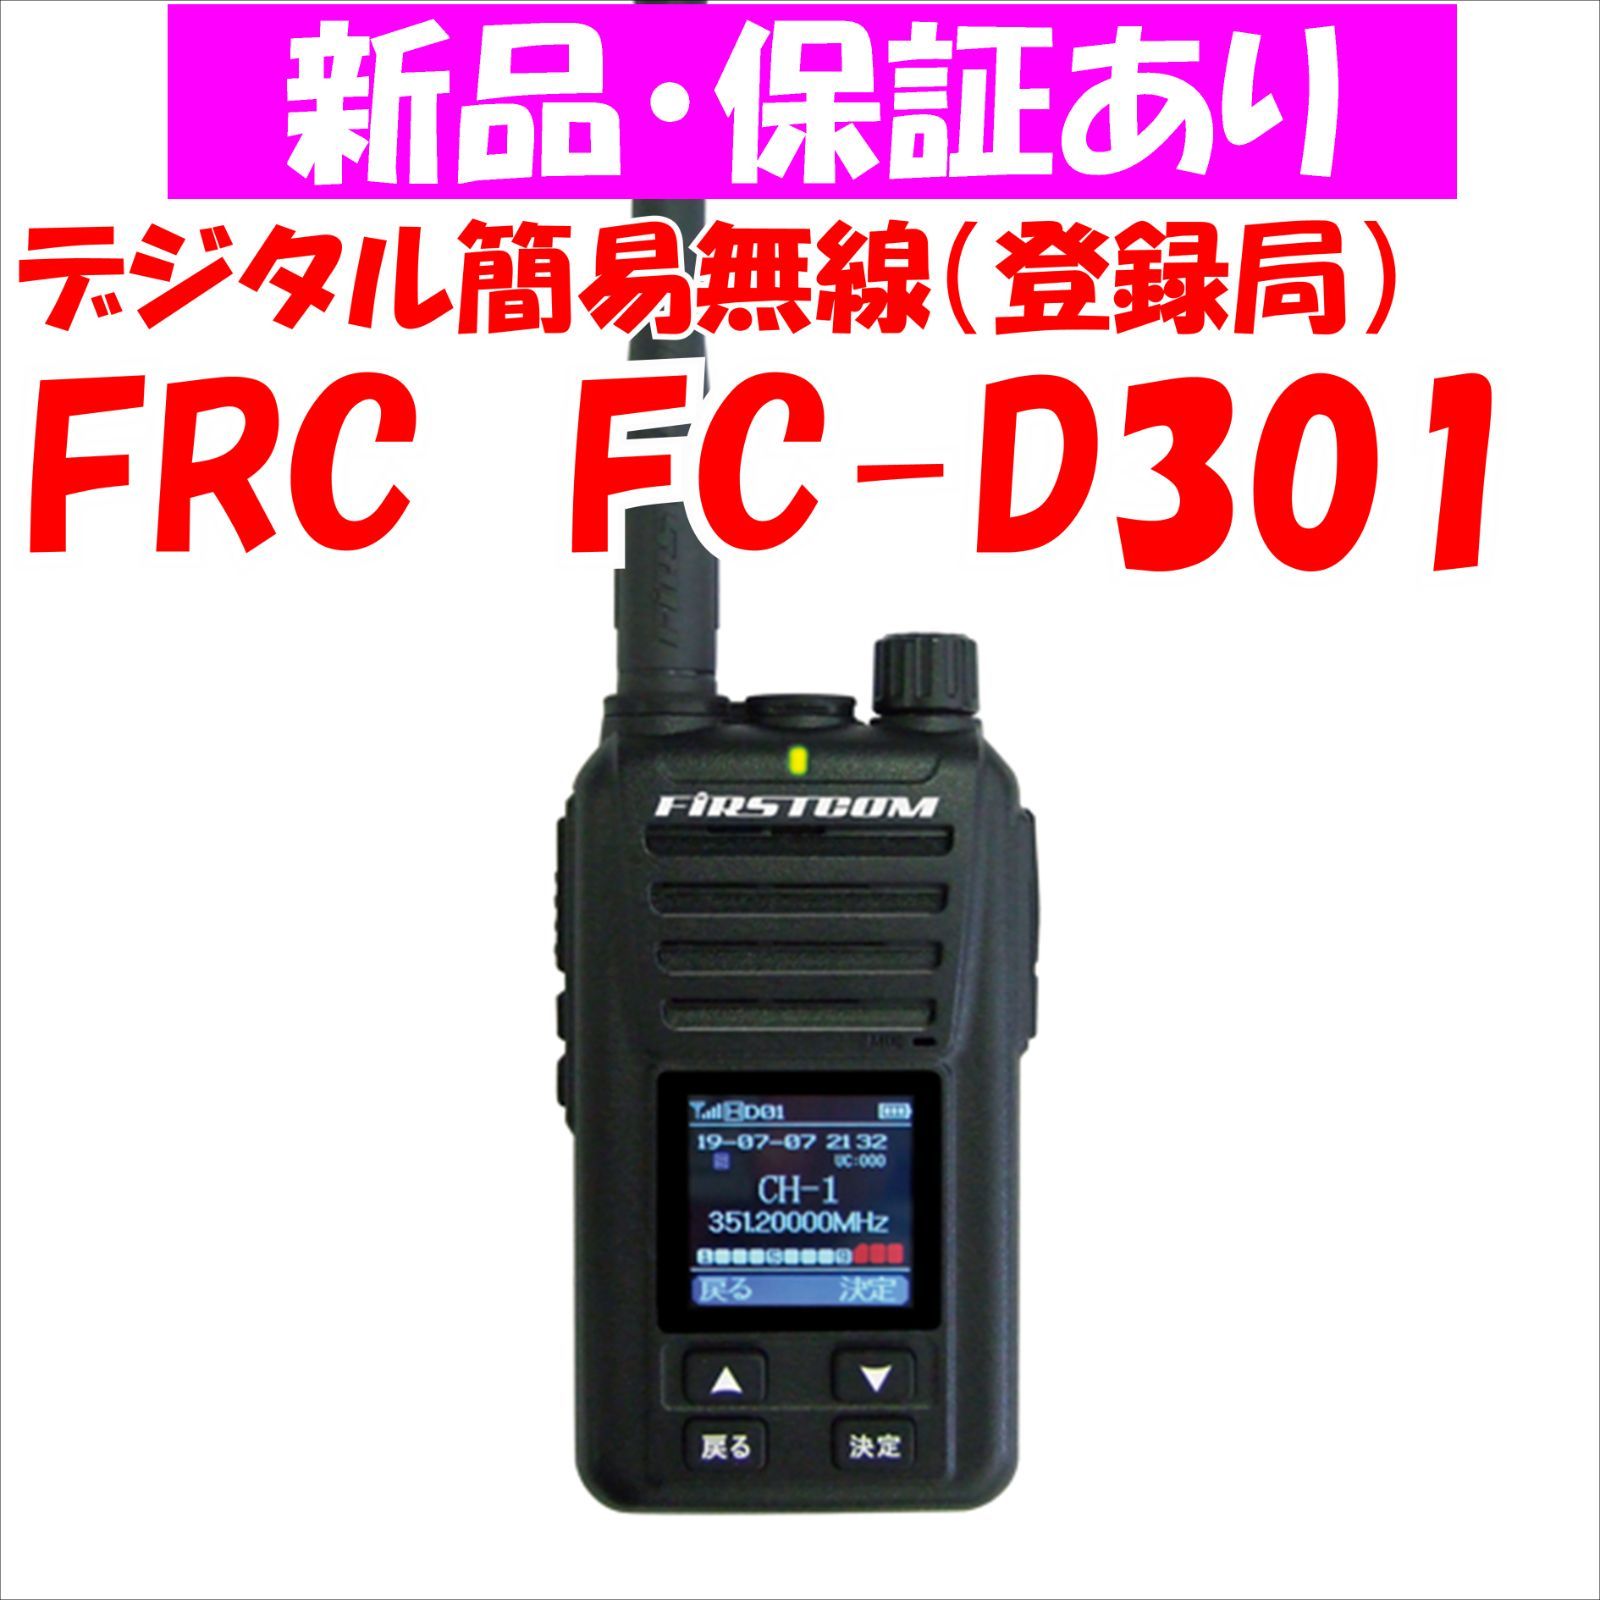 新品】FC-D301 FRC デジタル簡易無線（登録局） - メルカリ